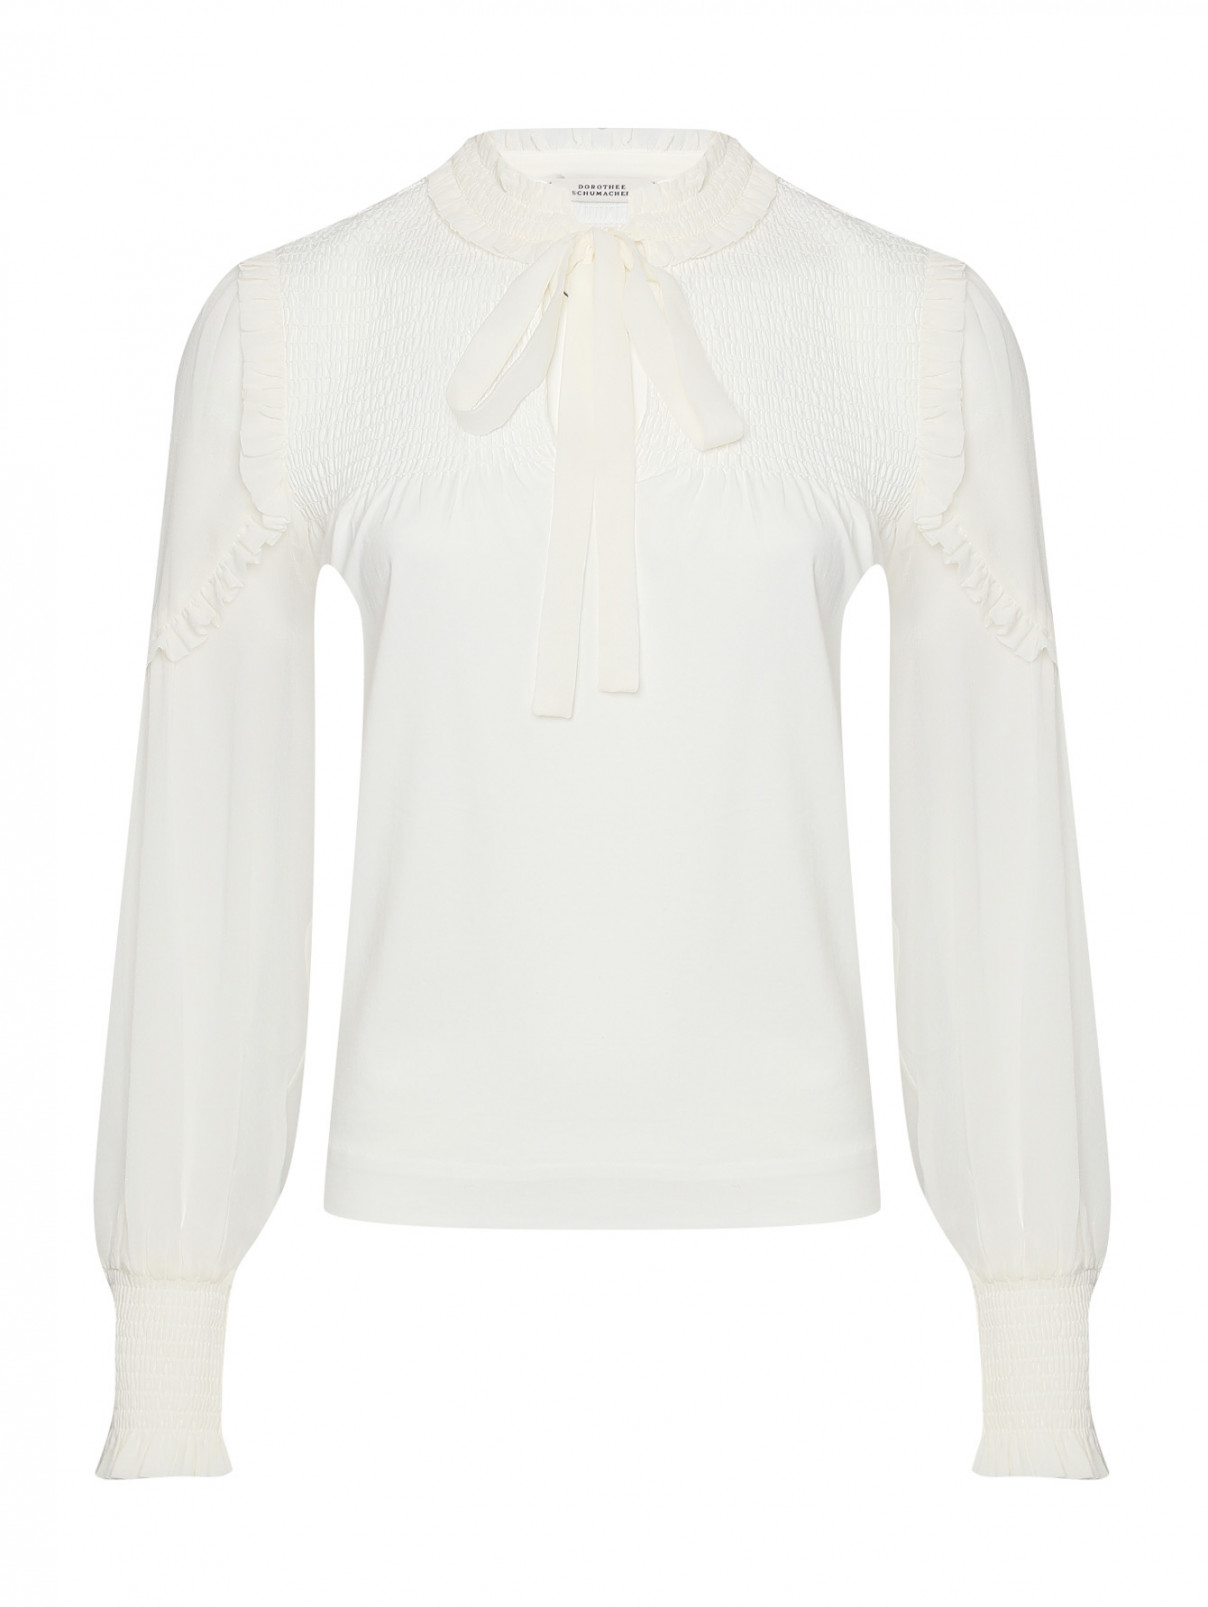 Комбинированная блуза с воланами Dorothee Schumacher  –  Общий вид  – Цвет:  Белый